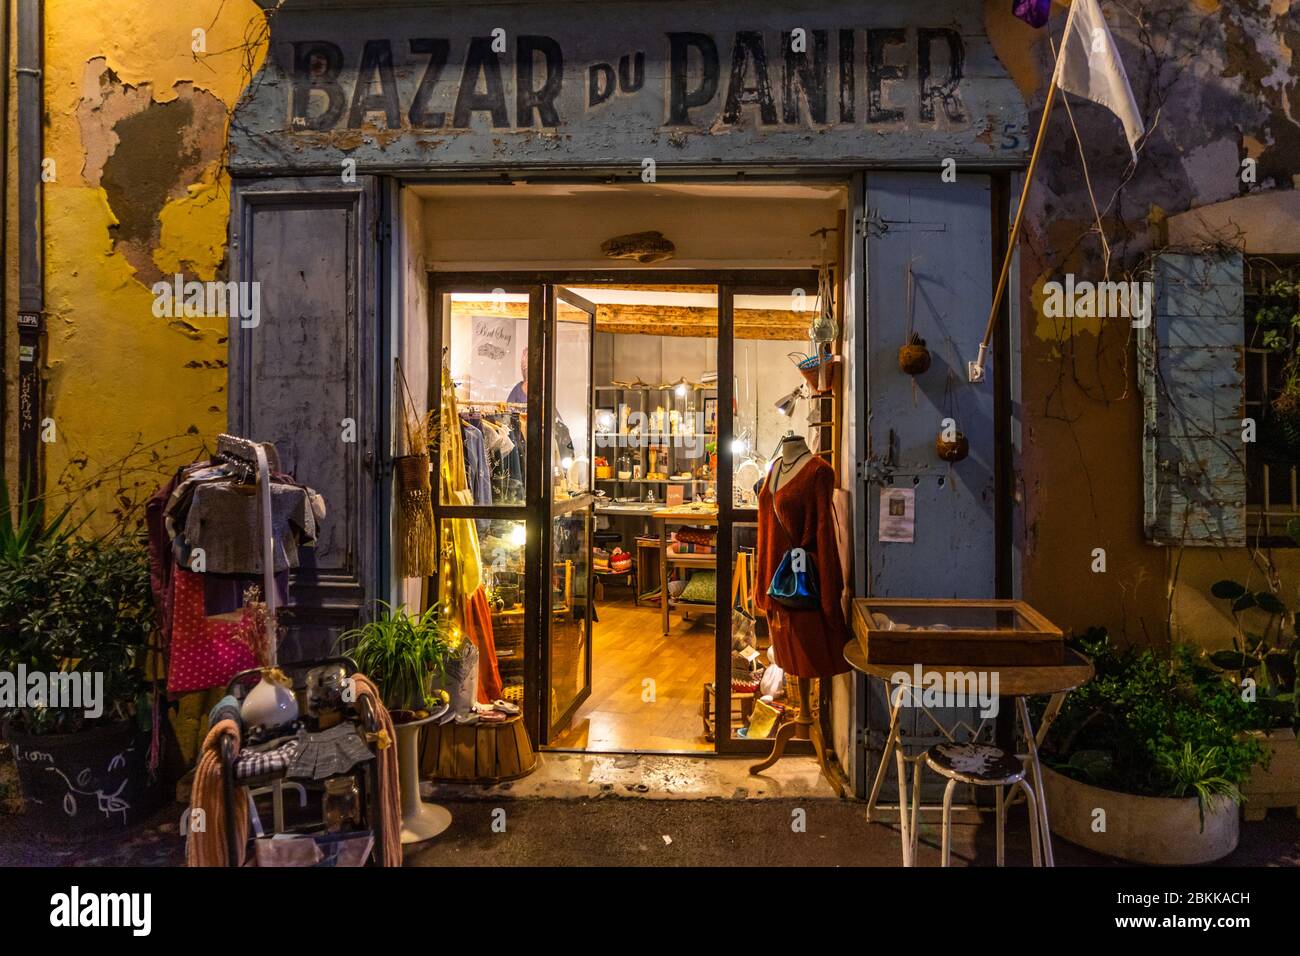 Vista notturna di Bazar du Panier, uno dei negozi più tipici del quartiere le Panier, il quartiere più antico di Marsiglia Foto Stock